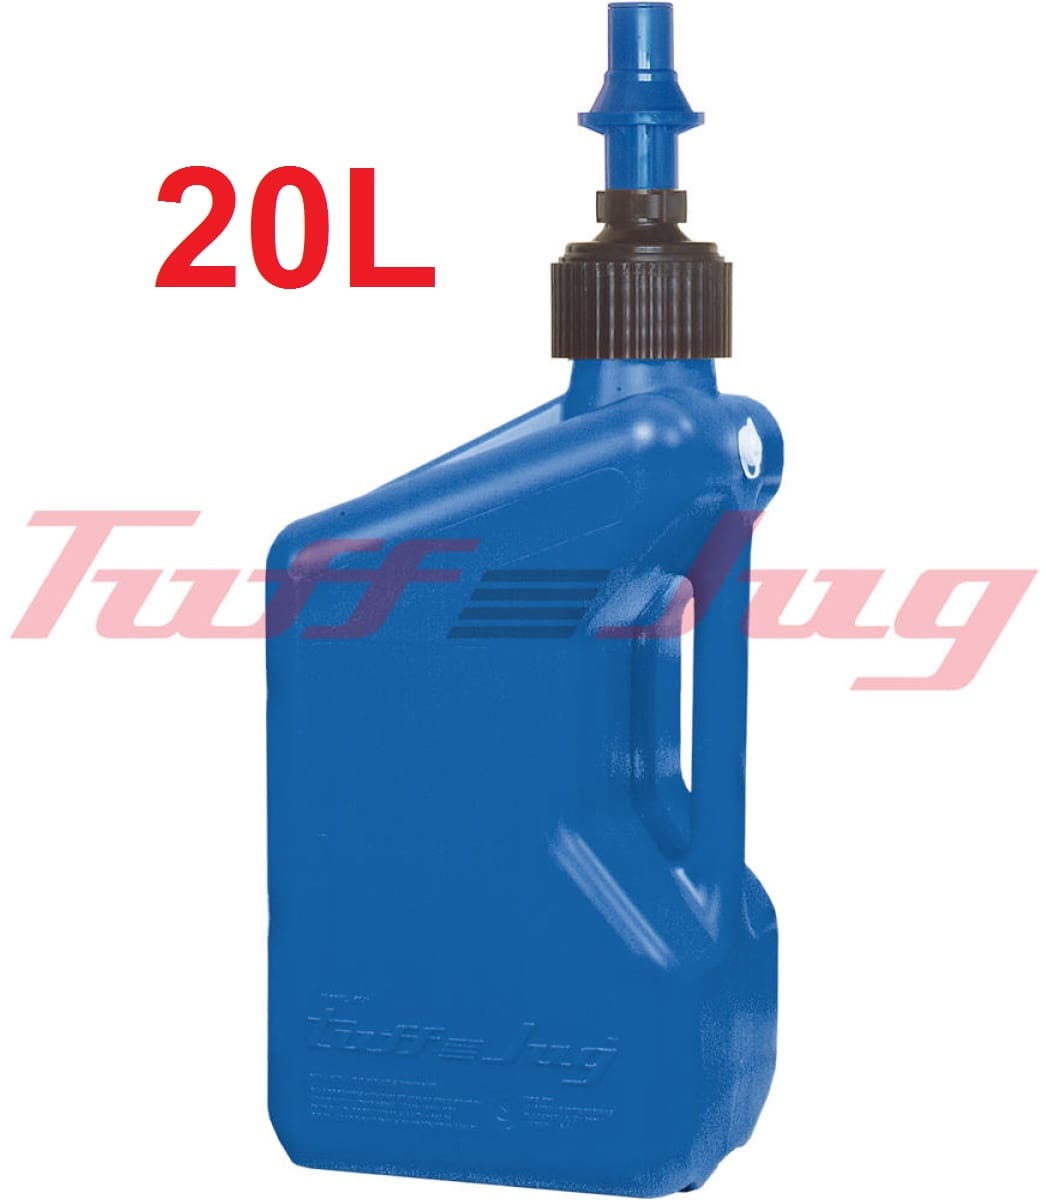 Bidon d'essence TUFF JUG bleu 20 Litres - 1030-0045 - Promo-jetski